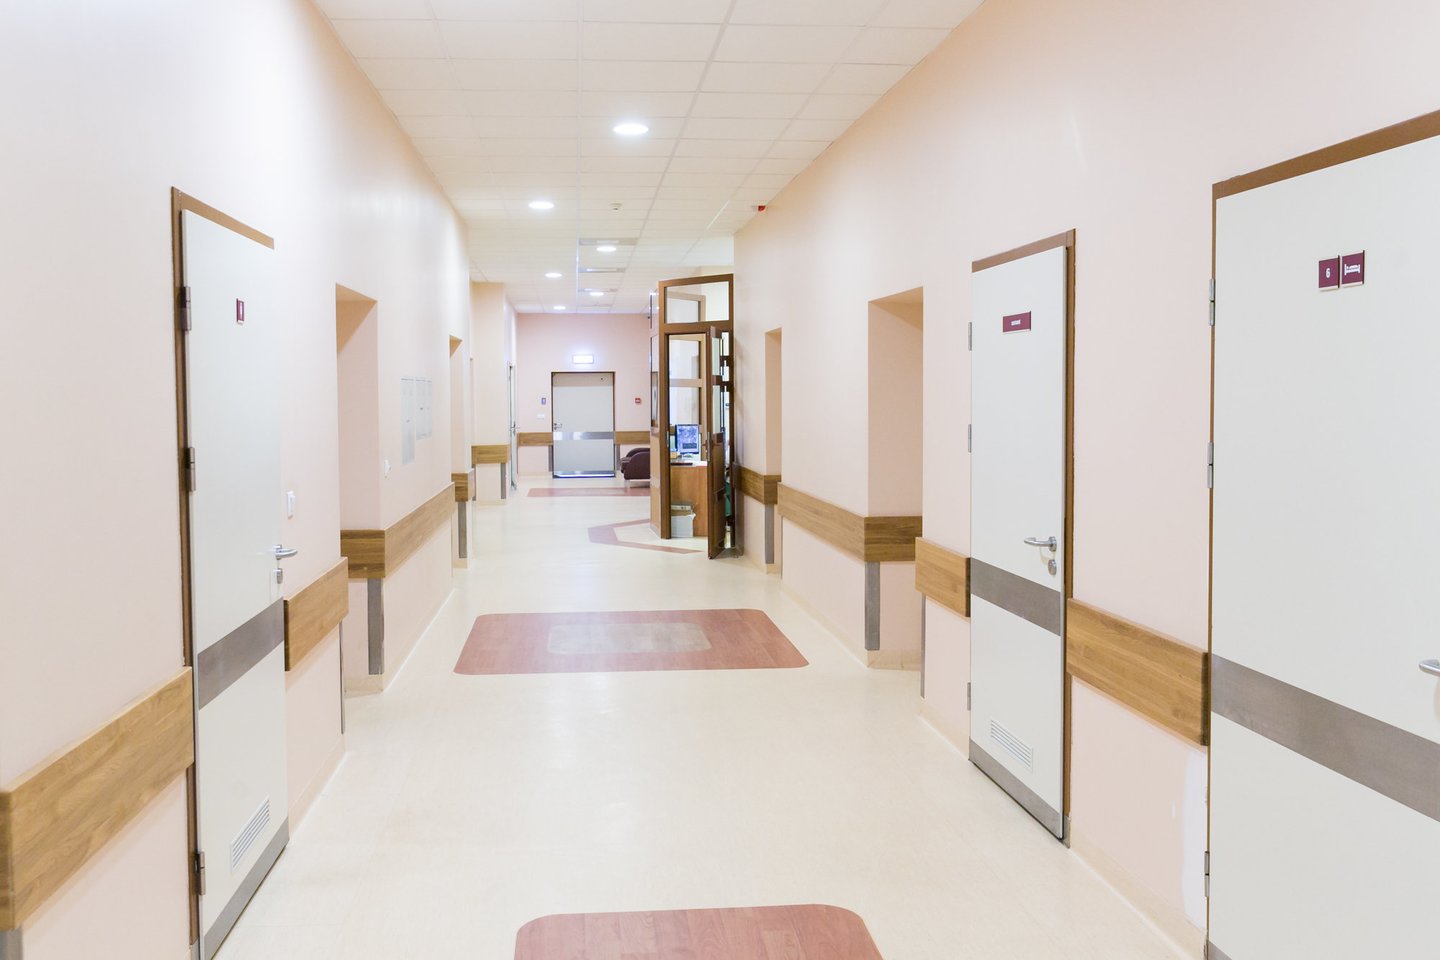 Respublikinės Vilniaus psichiatrijos ligoninės koridoriai vargiai skiriasi nuo kitų ligoninių. <br>T.Bauro nuotr.